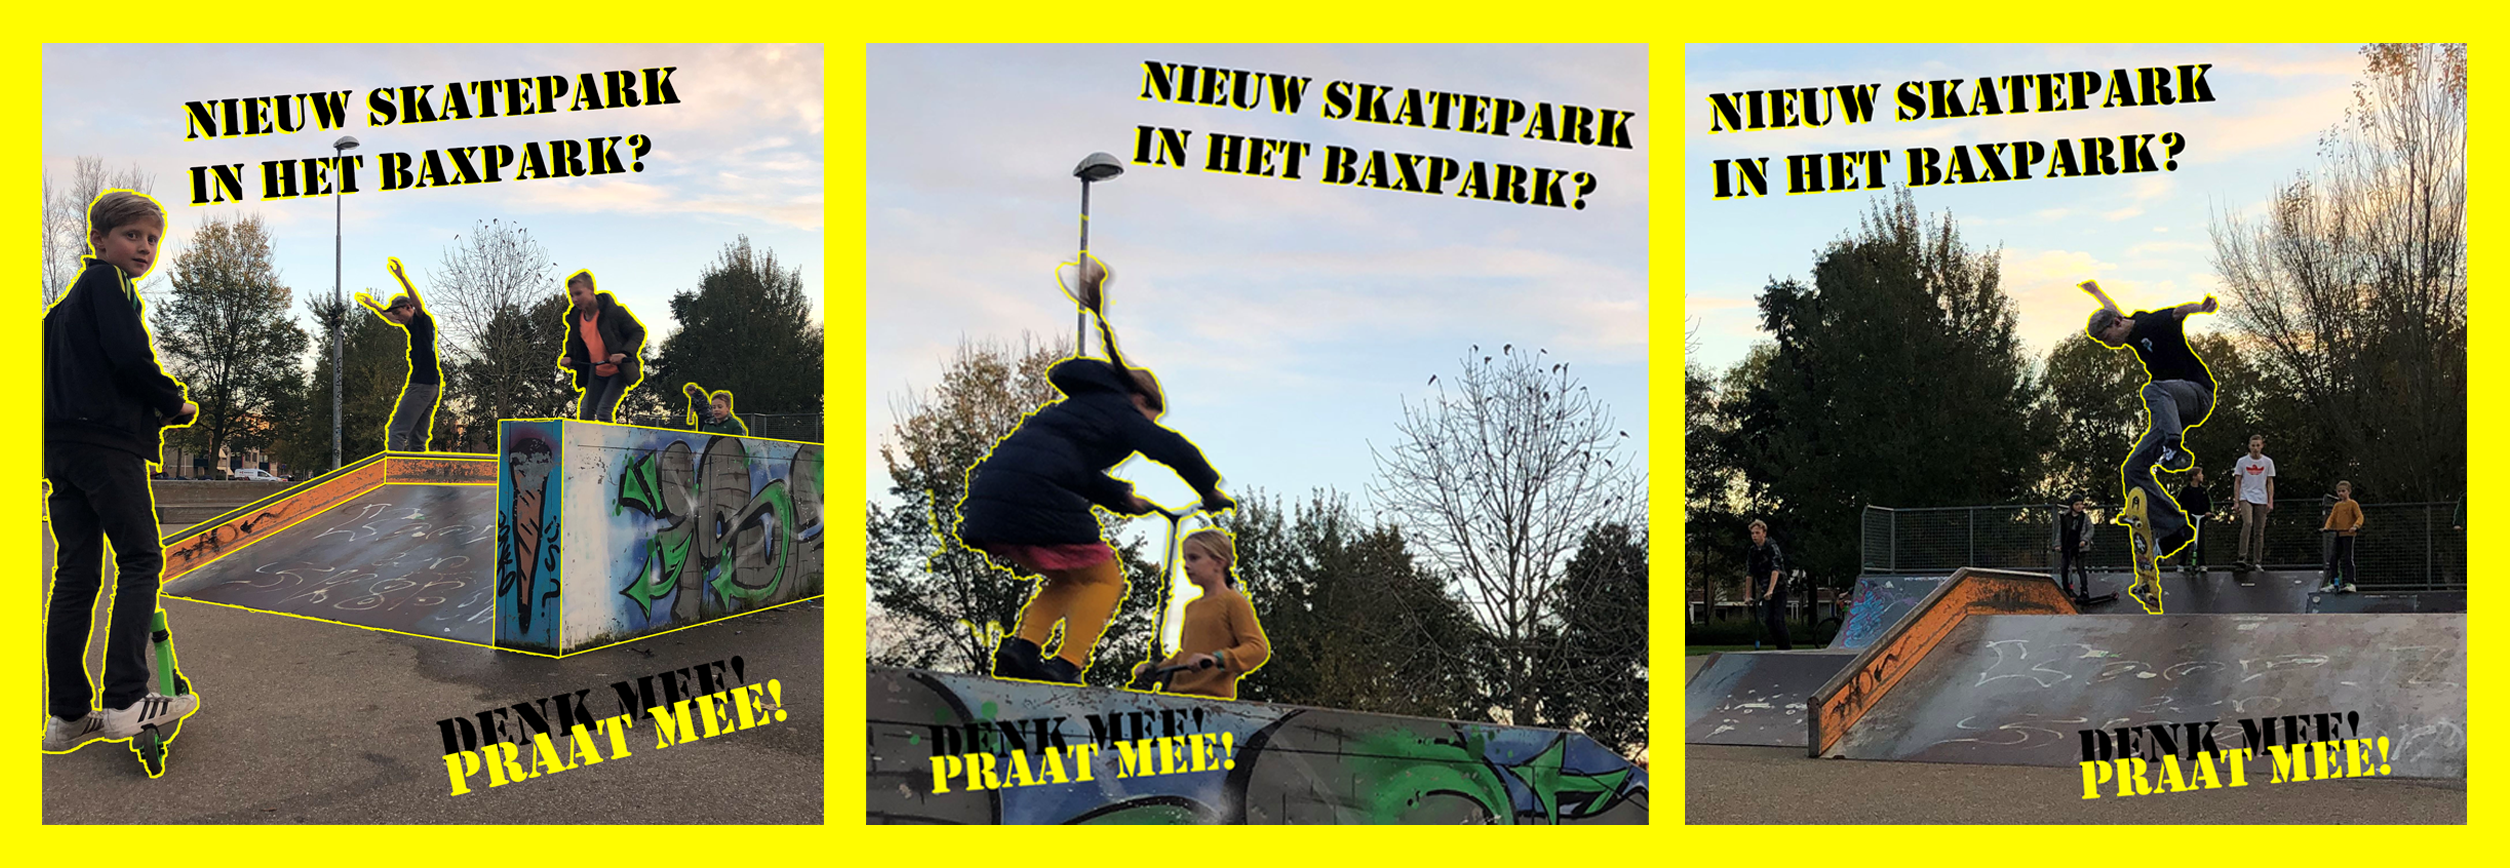 Skatepark Baxpark